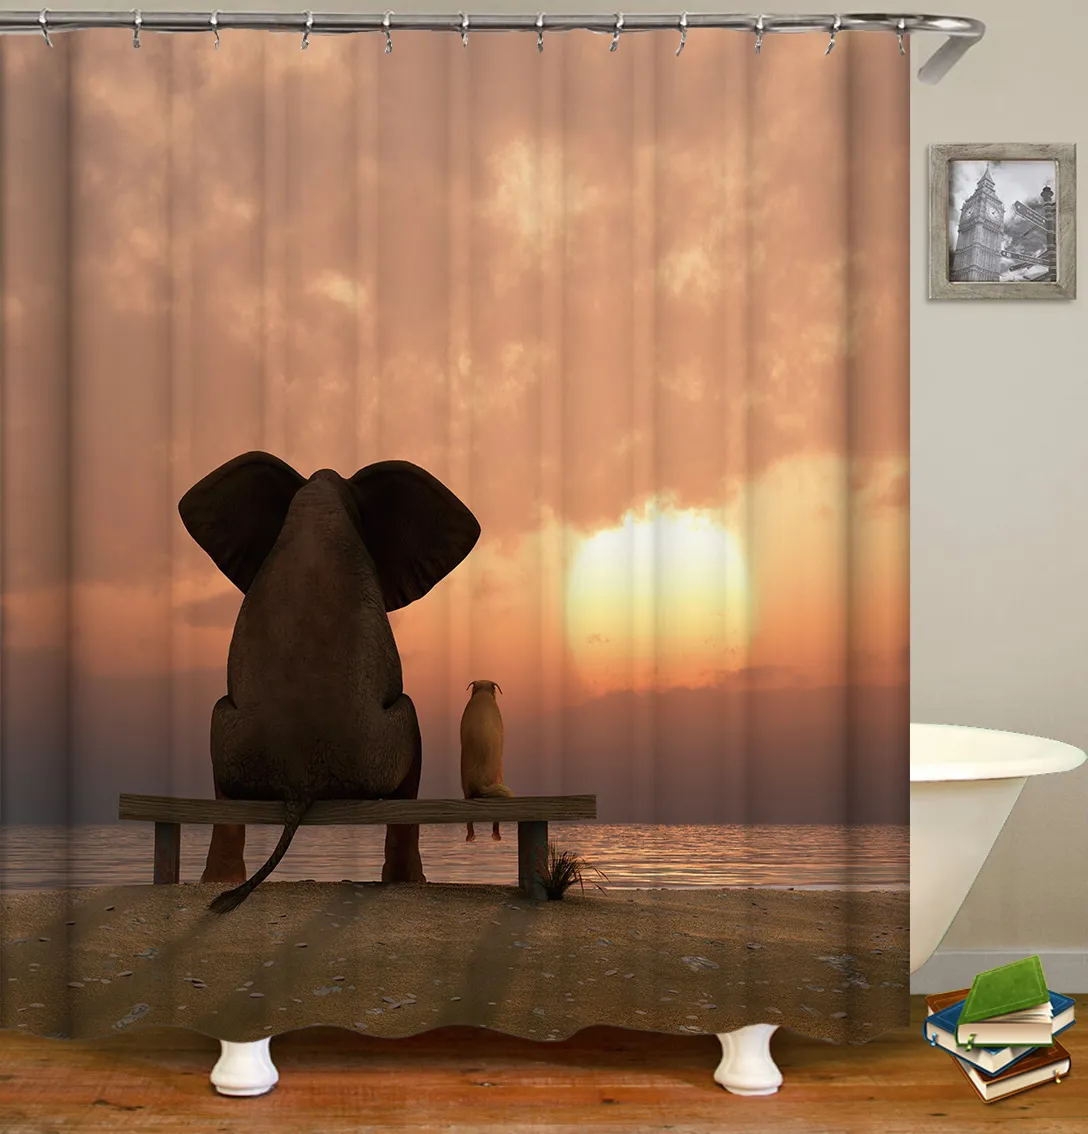 3D Print Prysznic Zasłony Zwierząt Słoń Zasłony do łazienki Dekoracje Dostosowane Rozmiar Obraz Kurtyna Kąpielowa Hurtownie T200711